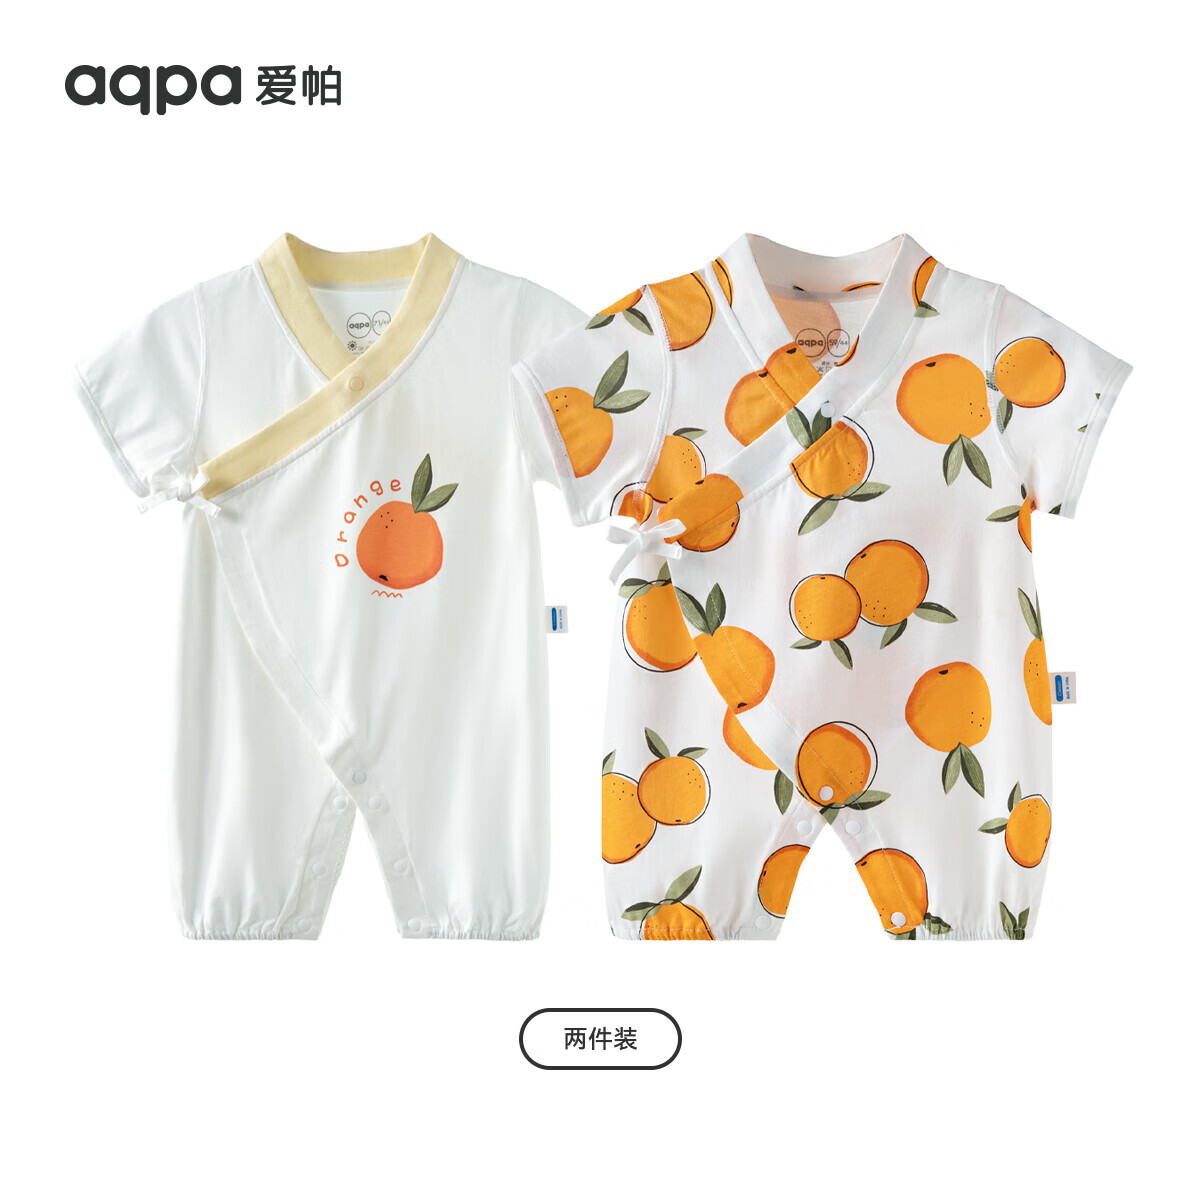 aqpa 婴儿夏季连体衣 心想事橙组合 66cm 券后32.72元